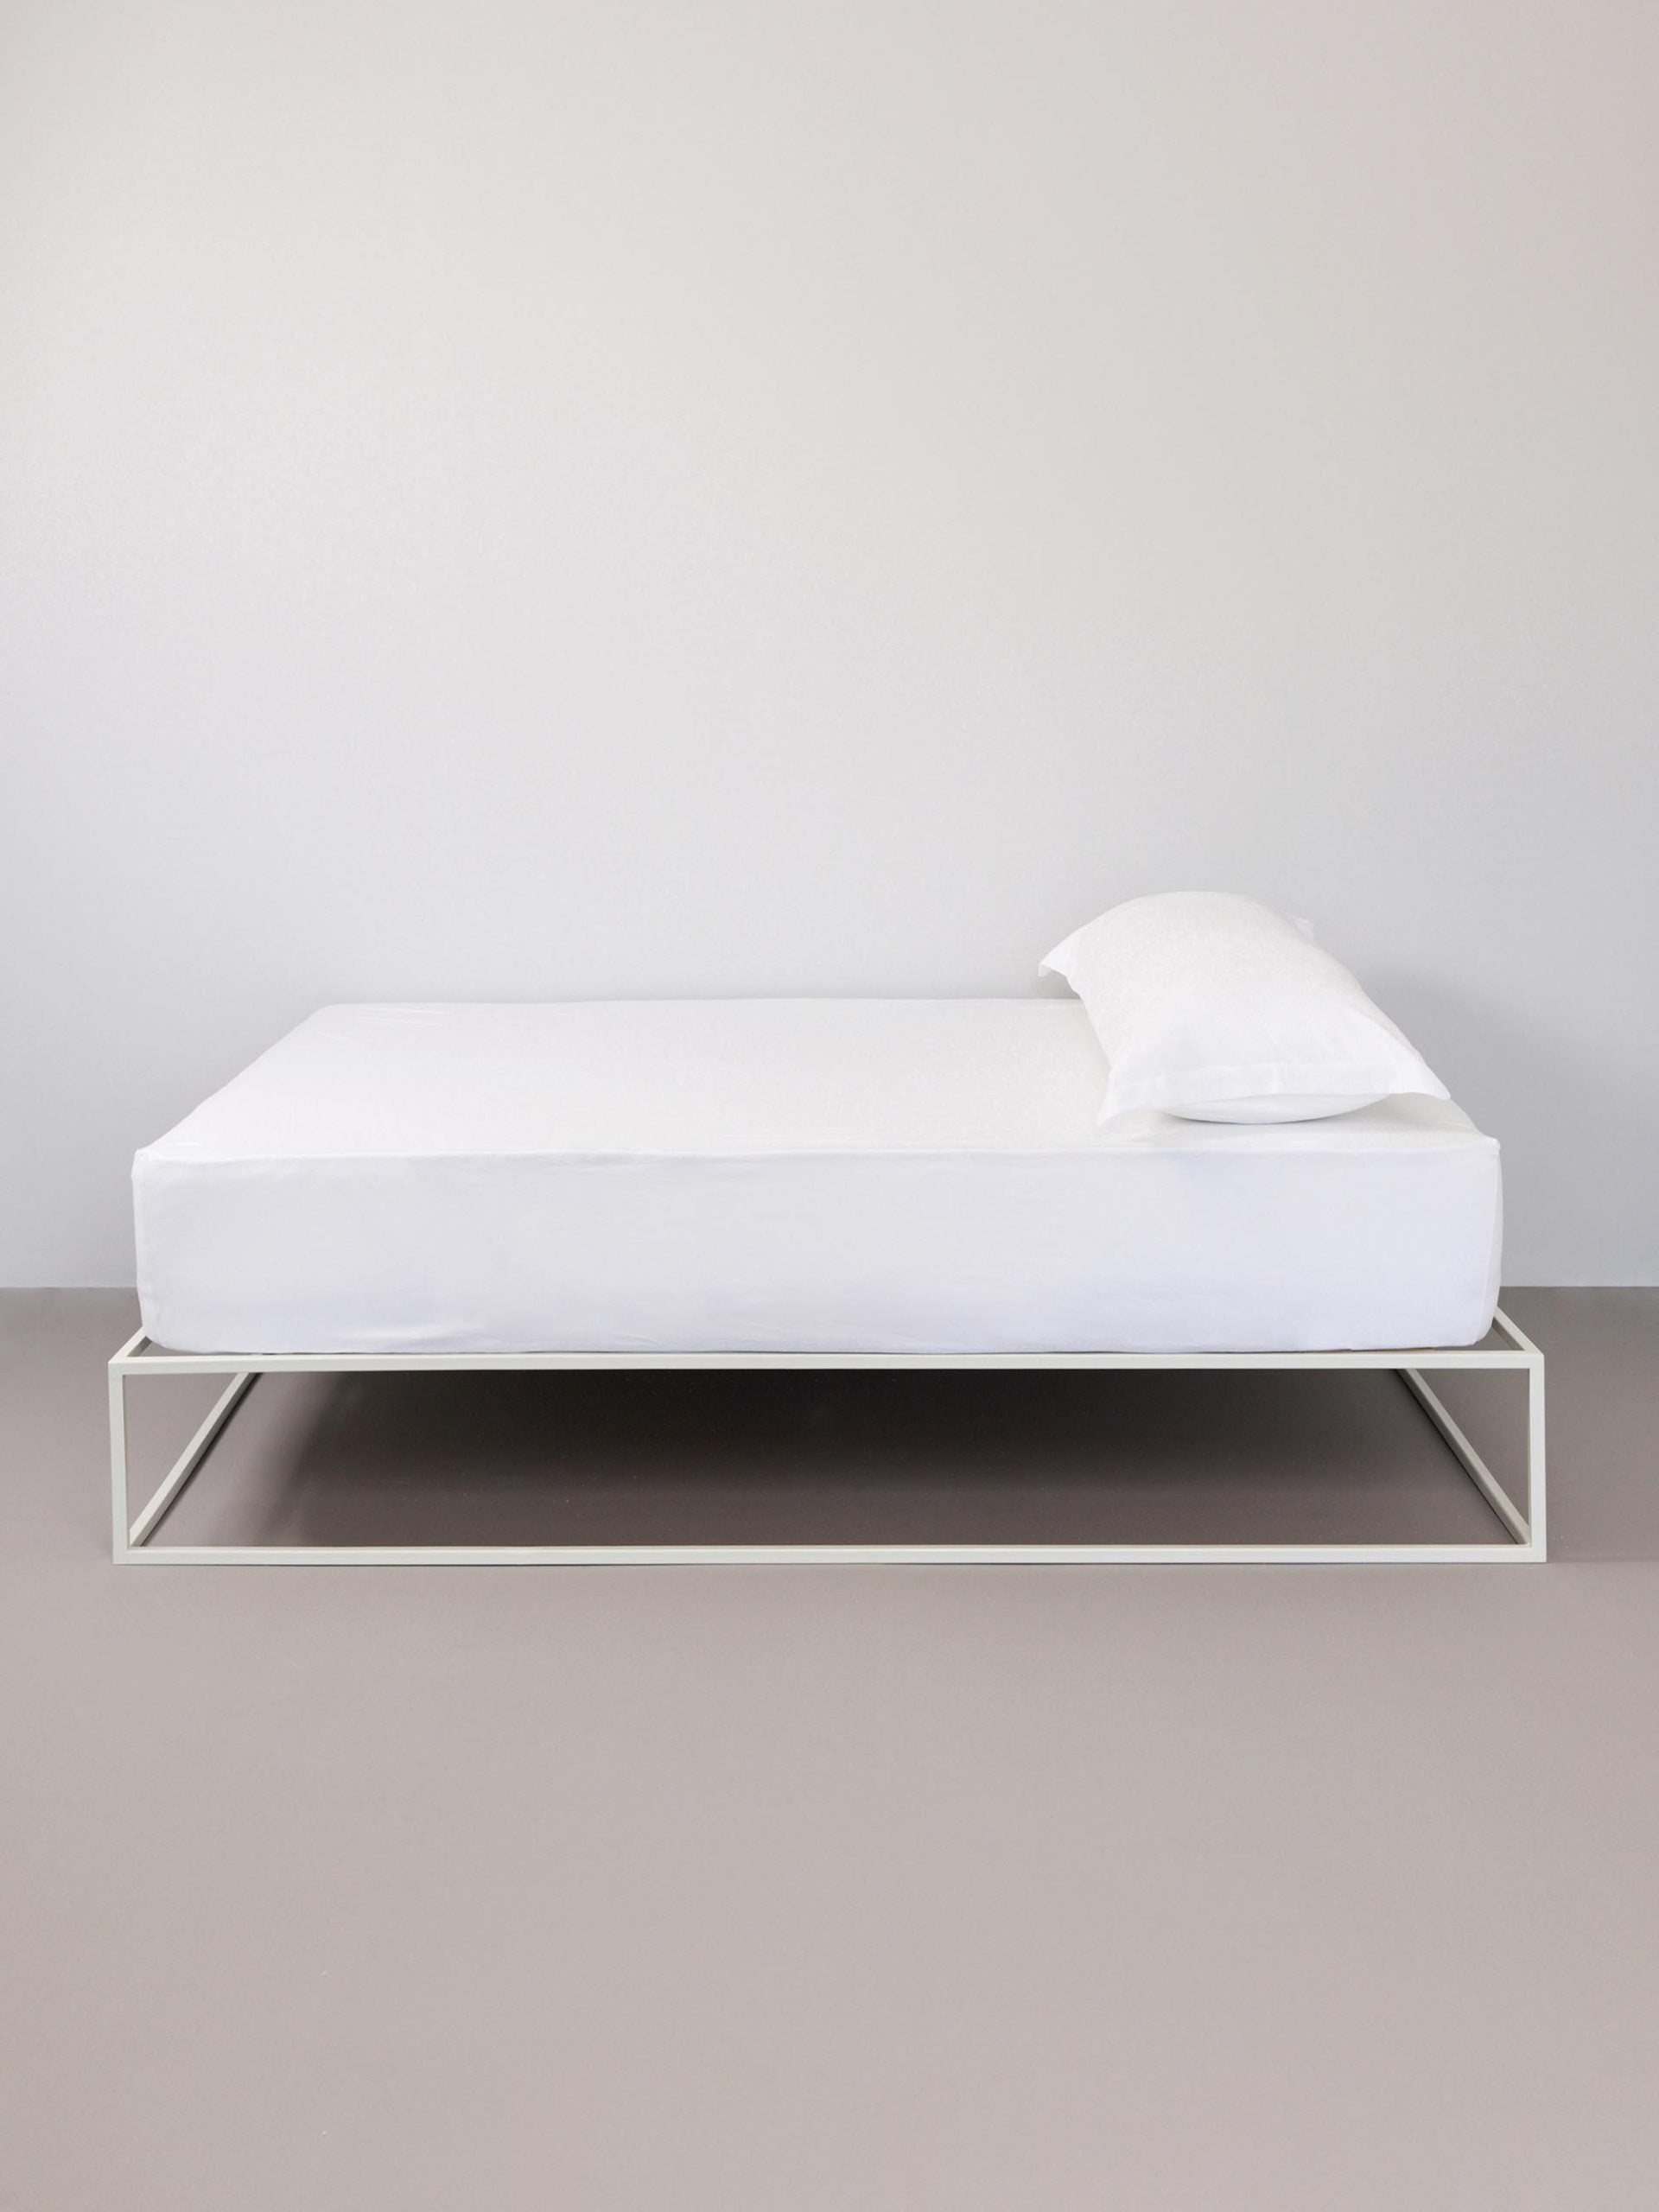 מיטת ברזל לבנה עם סדין, כרית וציפית לכרית ארוכה בצבע לבן בחדר עם קירות אפורים